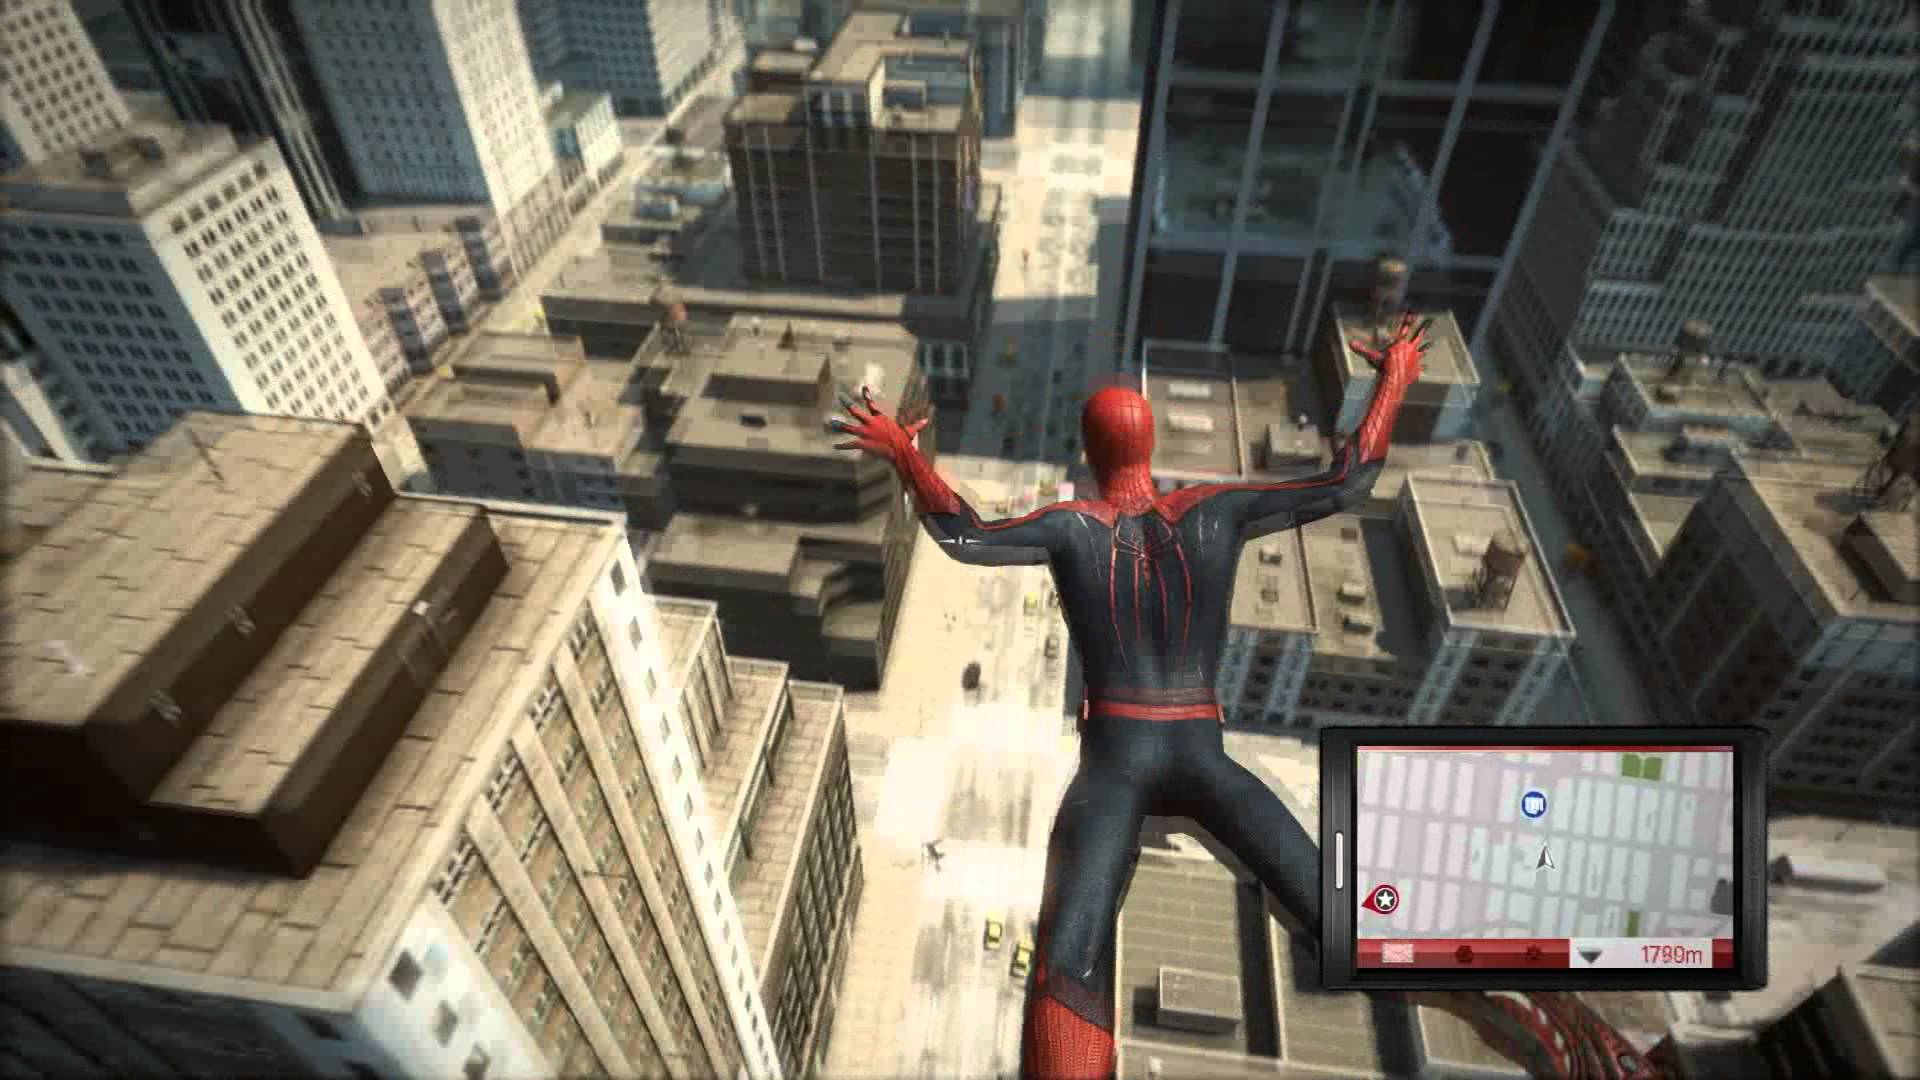 The amazing Spider-man игра геймплей. The amazing Spider man 1 игра геймплей. The amazing Spider man 2 игра геймплей. The amazing Spider-man 2 геймплей. Игры 2018 системный